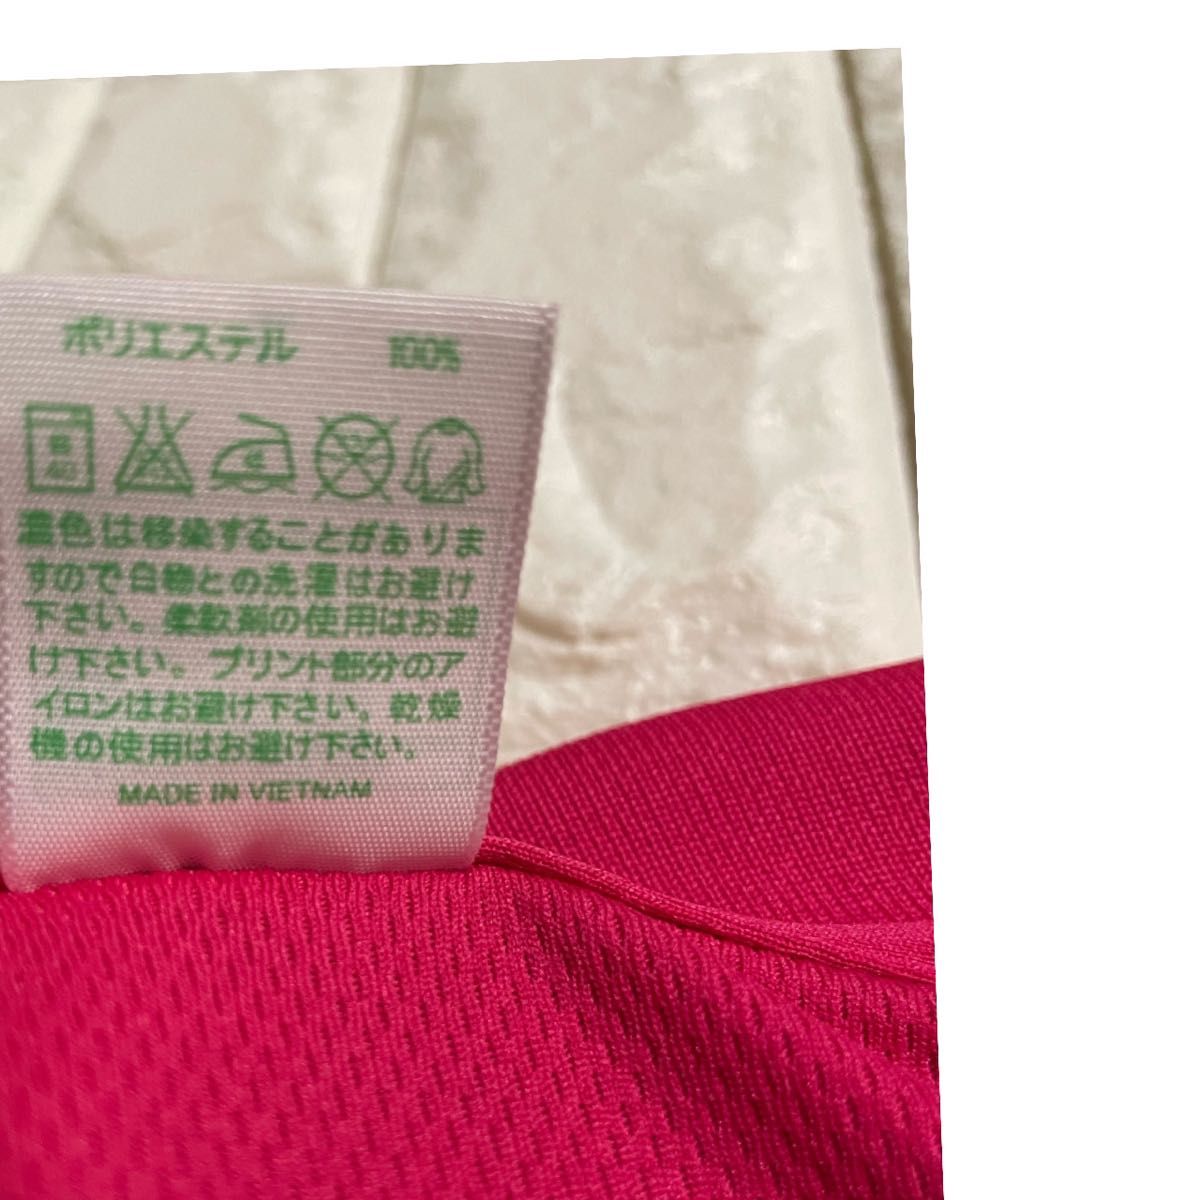 ポロシャツ 【新品未使用】ゴルフウェア 2016 TWINFILDS LADIS TOURNAMENT ピンク色 Lサイズ メンズ